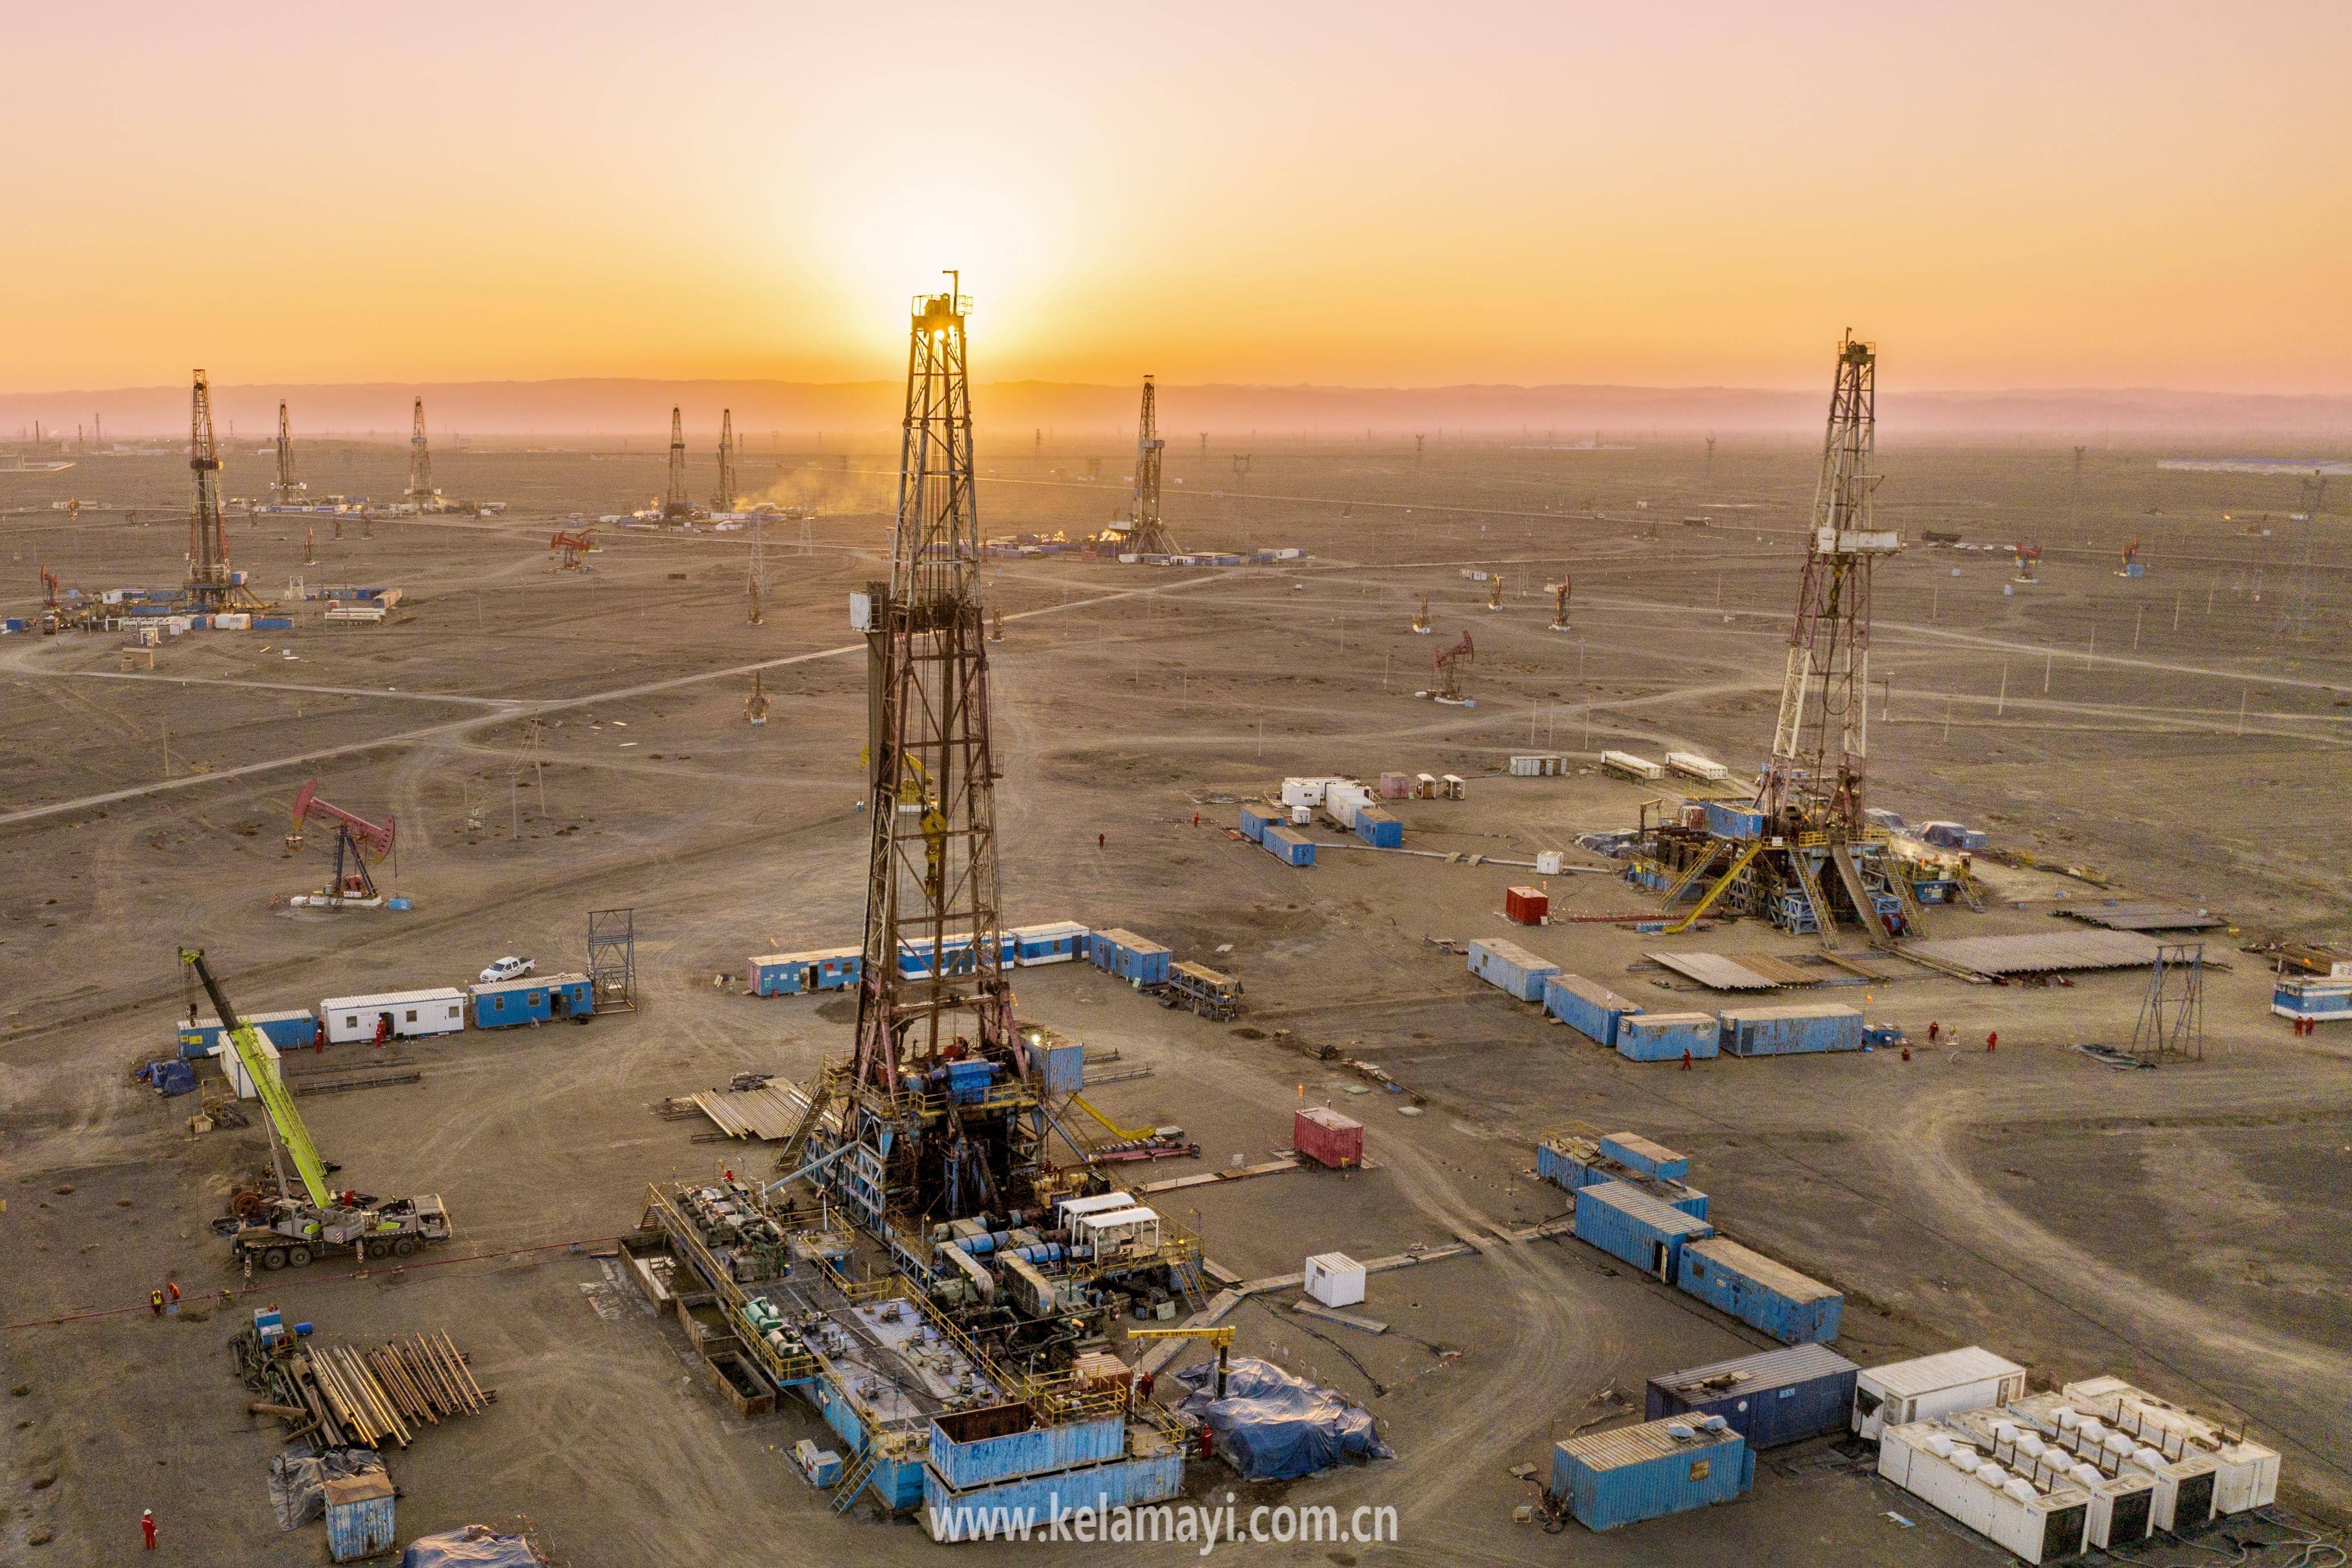 3月31日傍晚,伴着夕阳的余晖,新疆油田百21井区产能建设区块的钻井